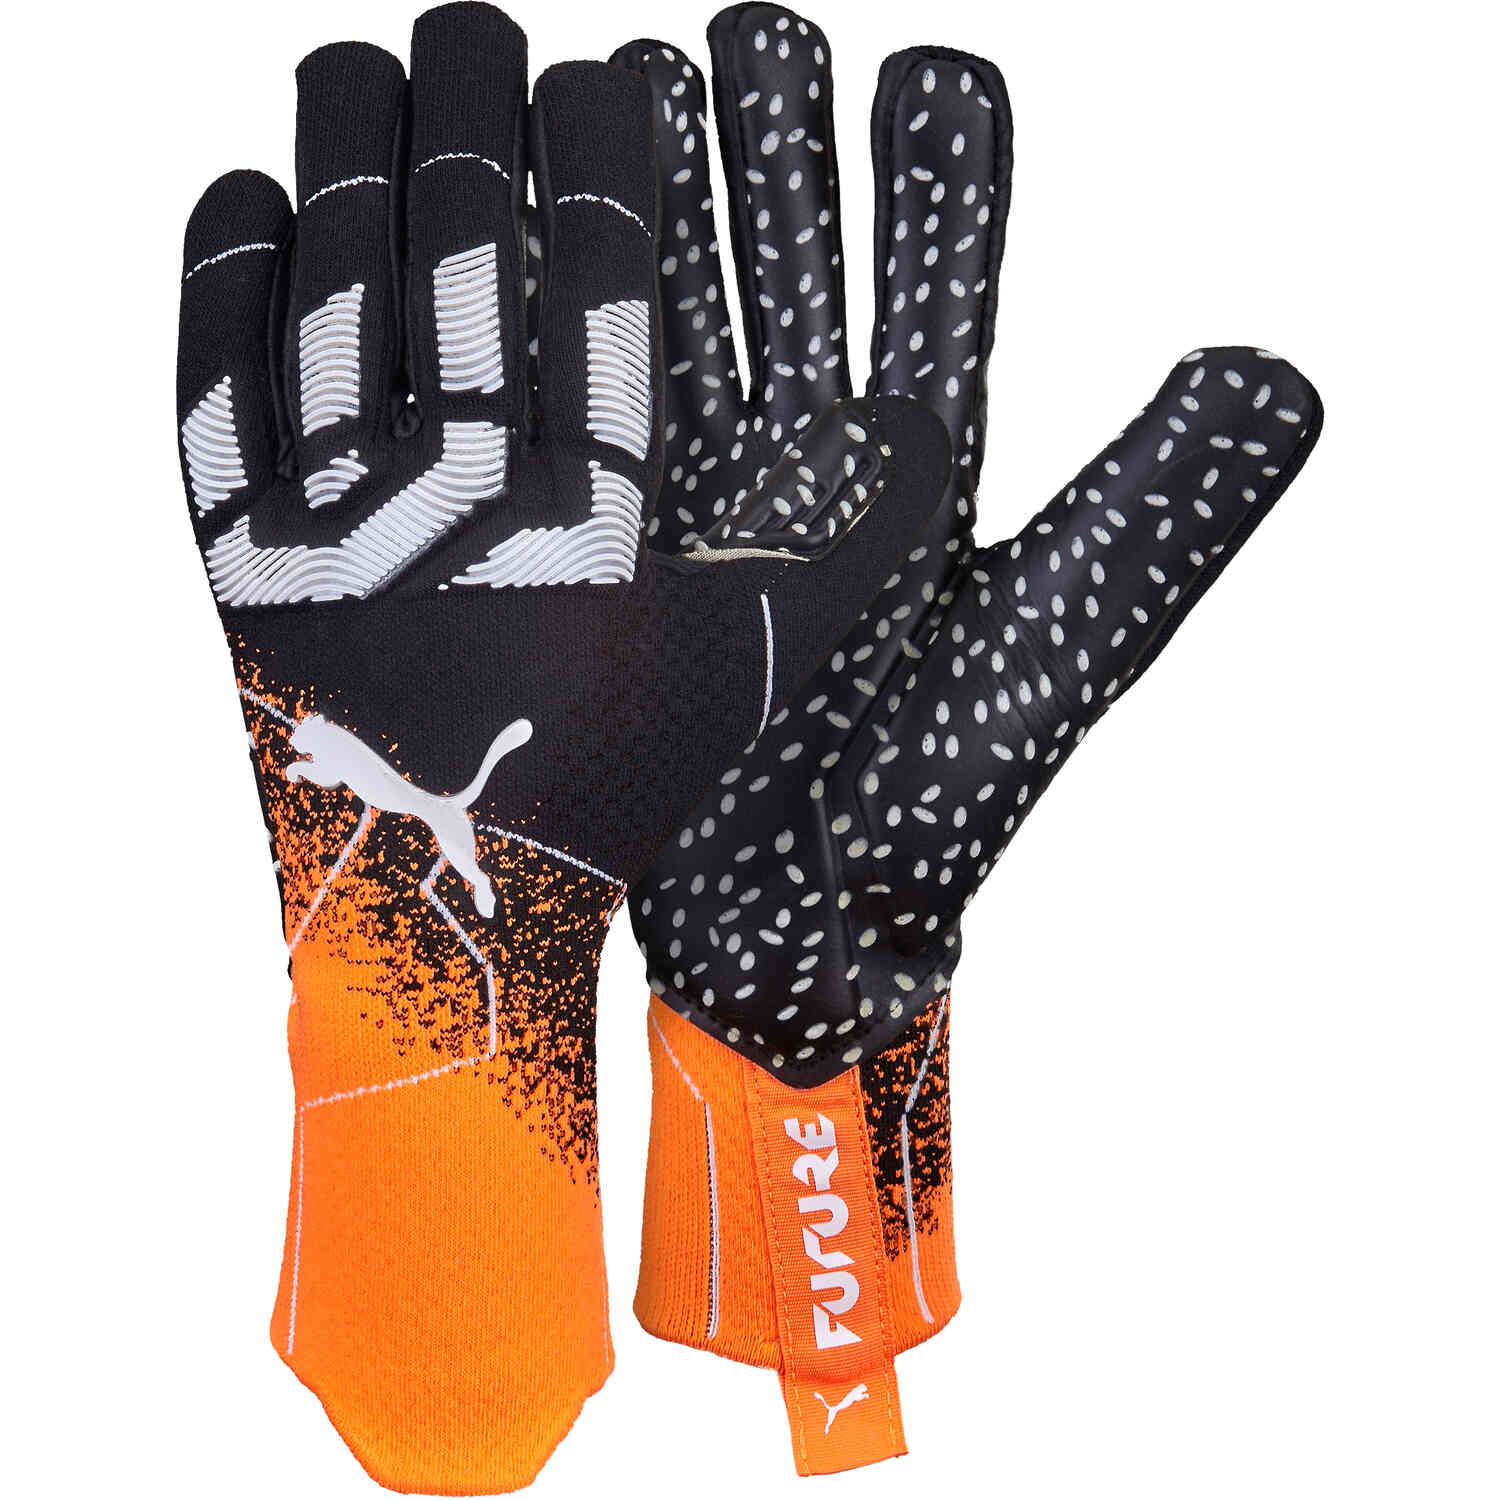 Puma Future Z Grip 1 Negative Cut Goalkeeper Gloves - Live Wire & Black -  SoccerPro